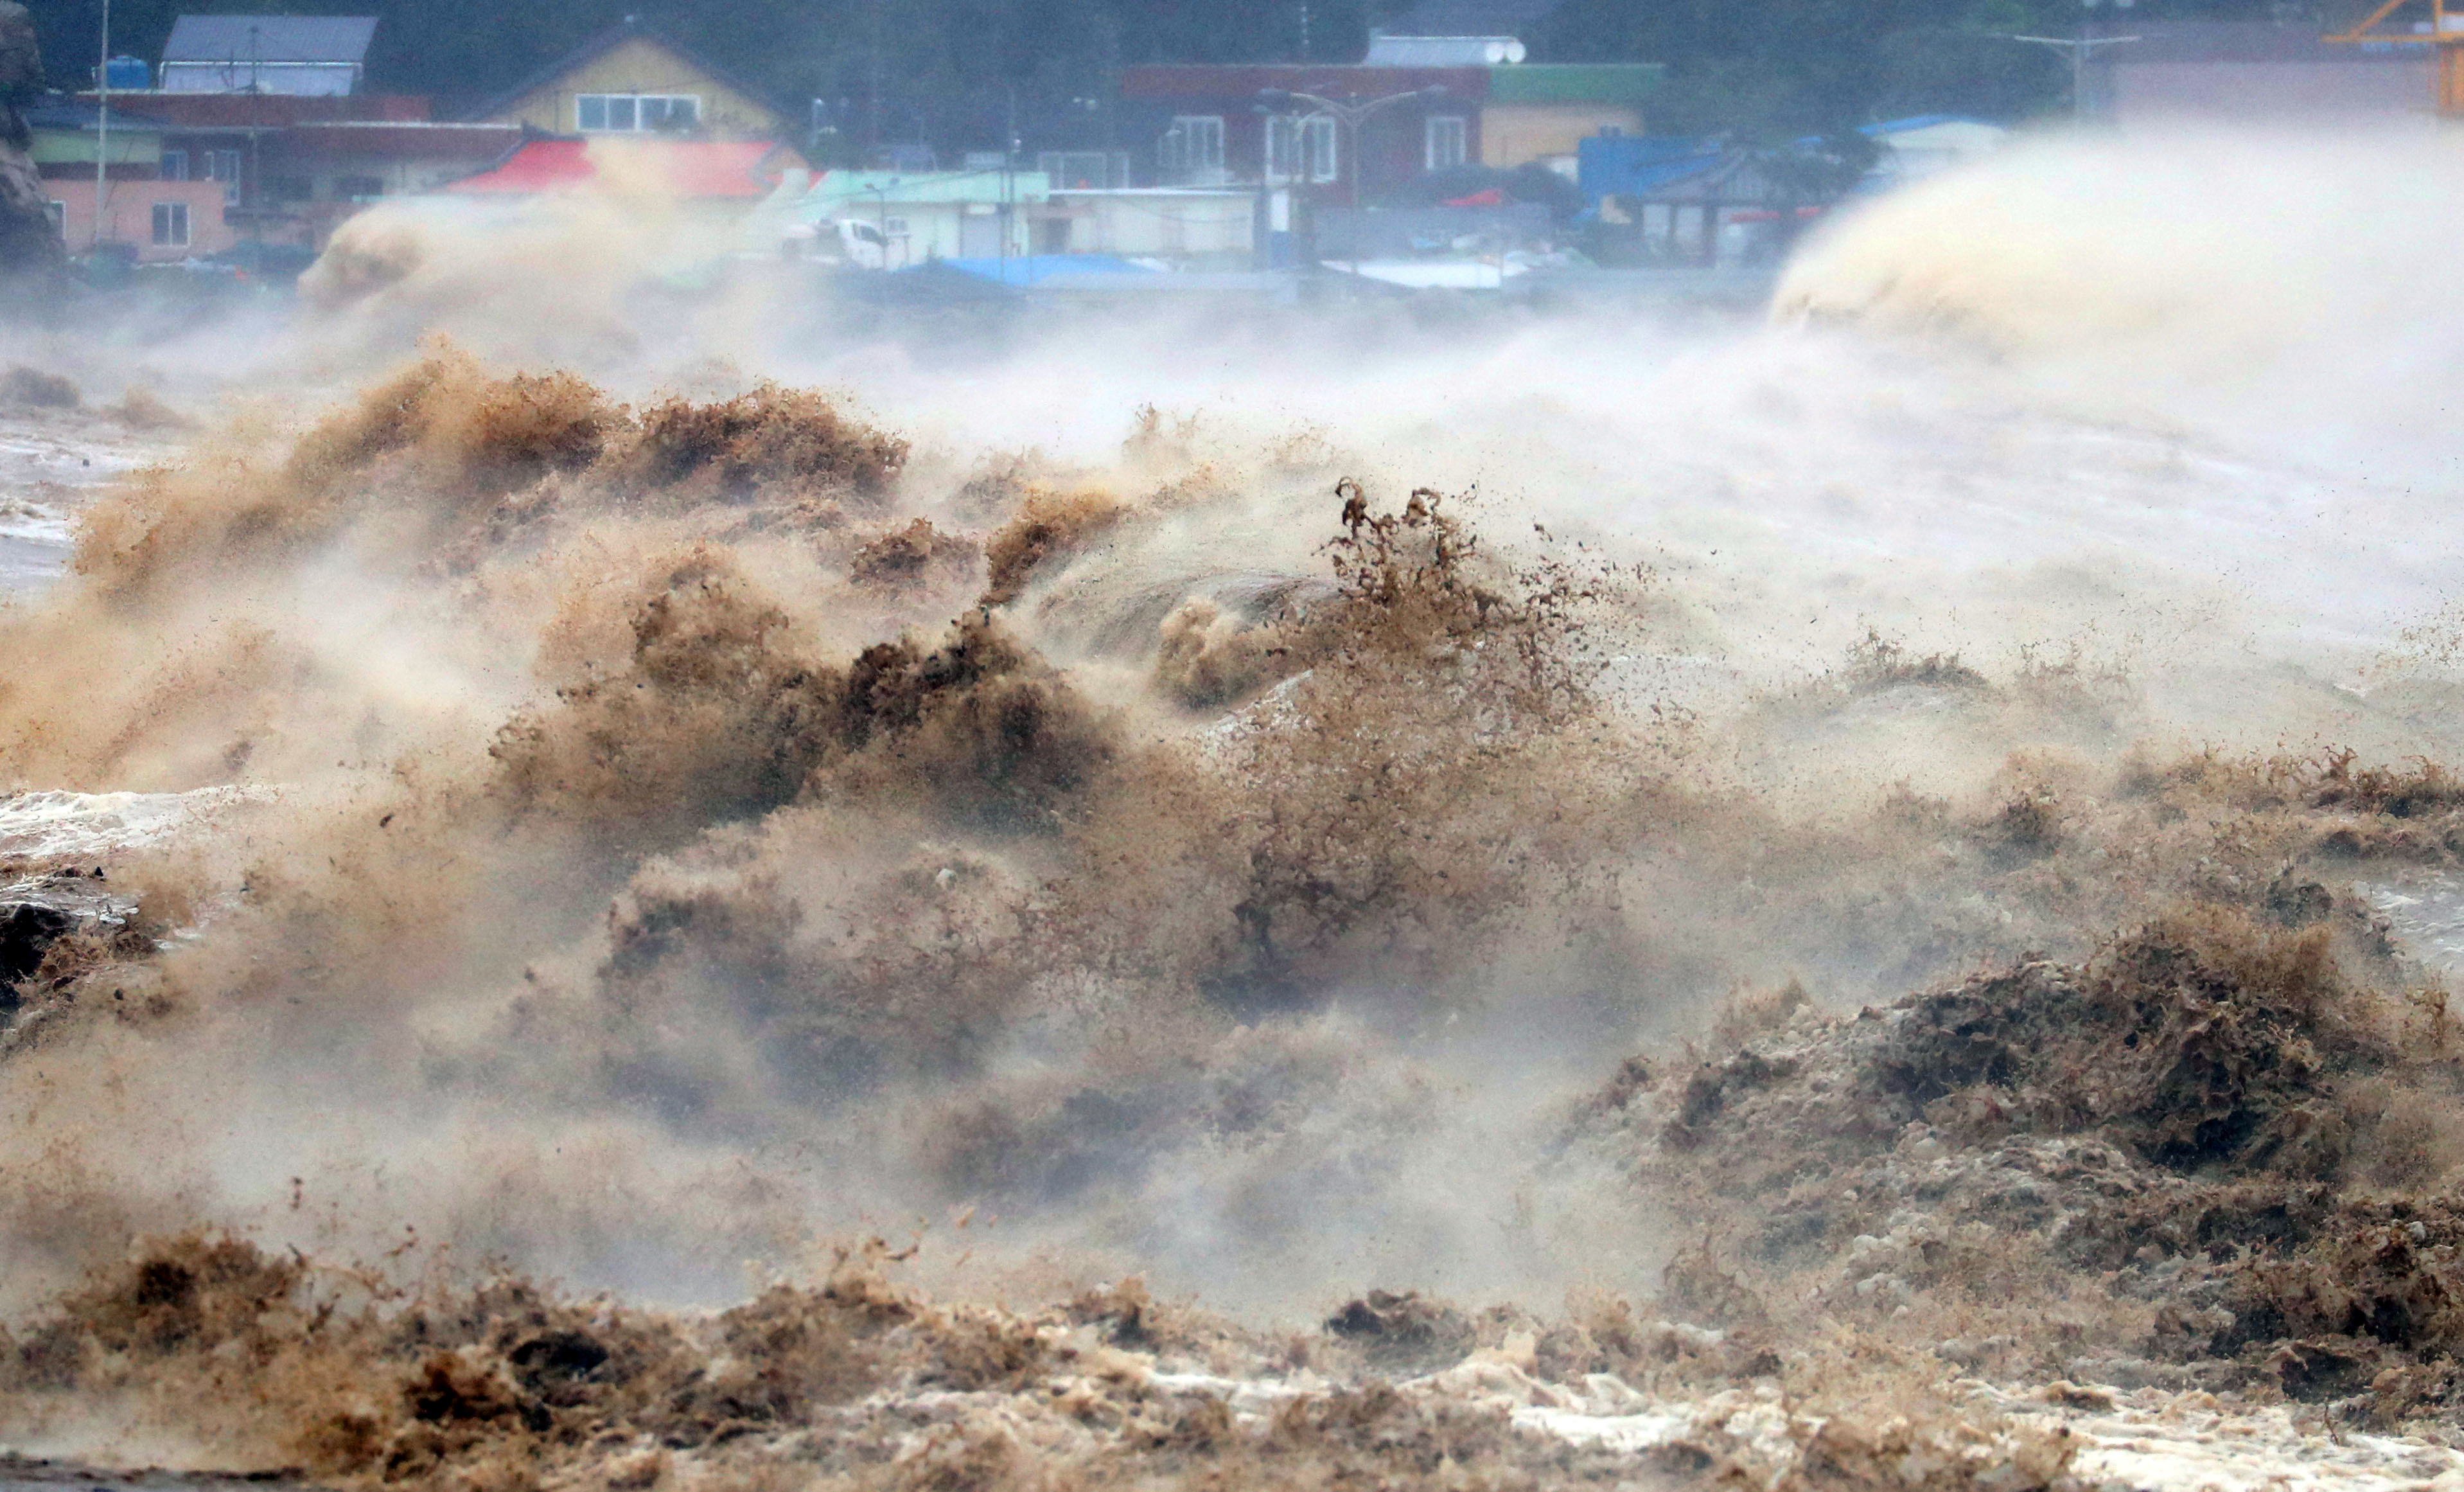 El oleaje causado por el tifón en las costas surcoreanas (Yonhap via REUTERS)